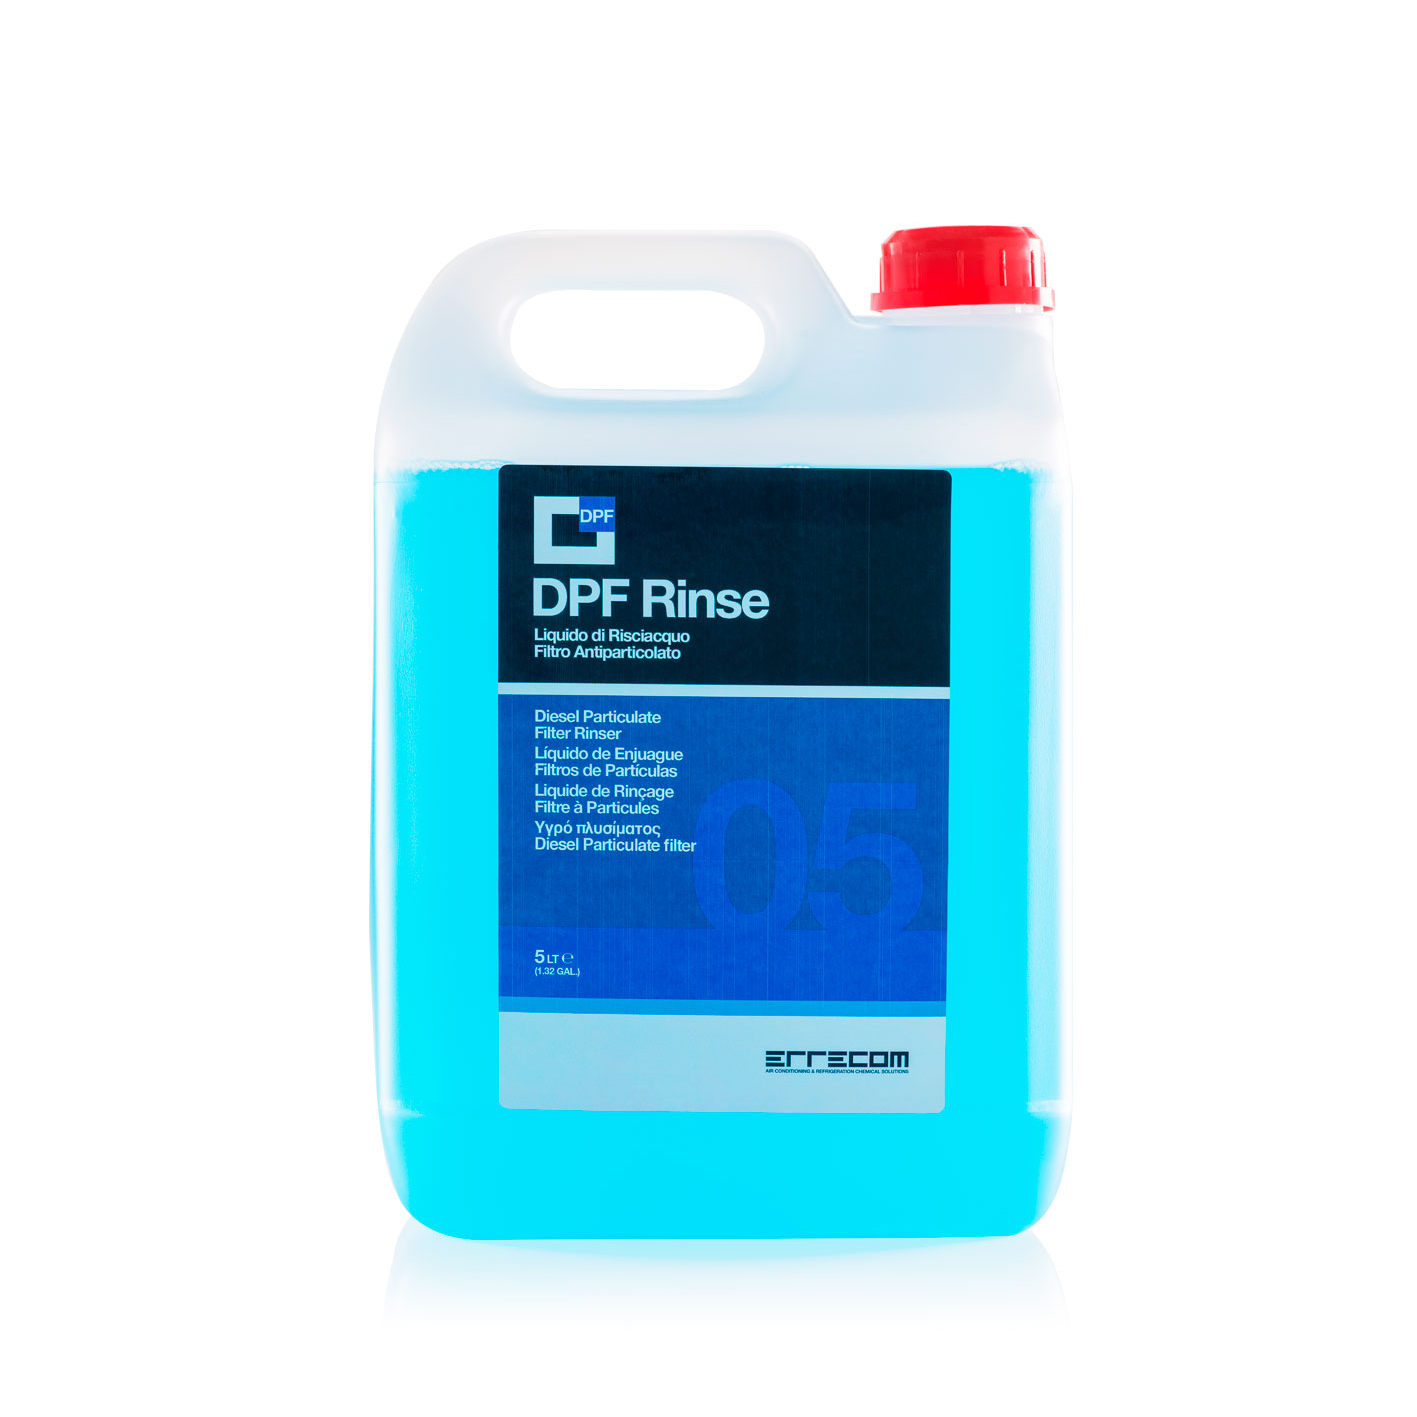 DPF RINSE Liquido per il Risciacquo dei Filtri Antiparticolato Diesel - 5 litri - Confezione n° 2 pezzi